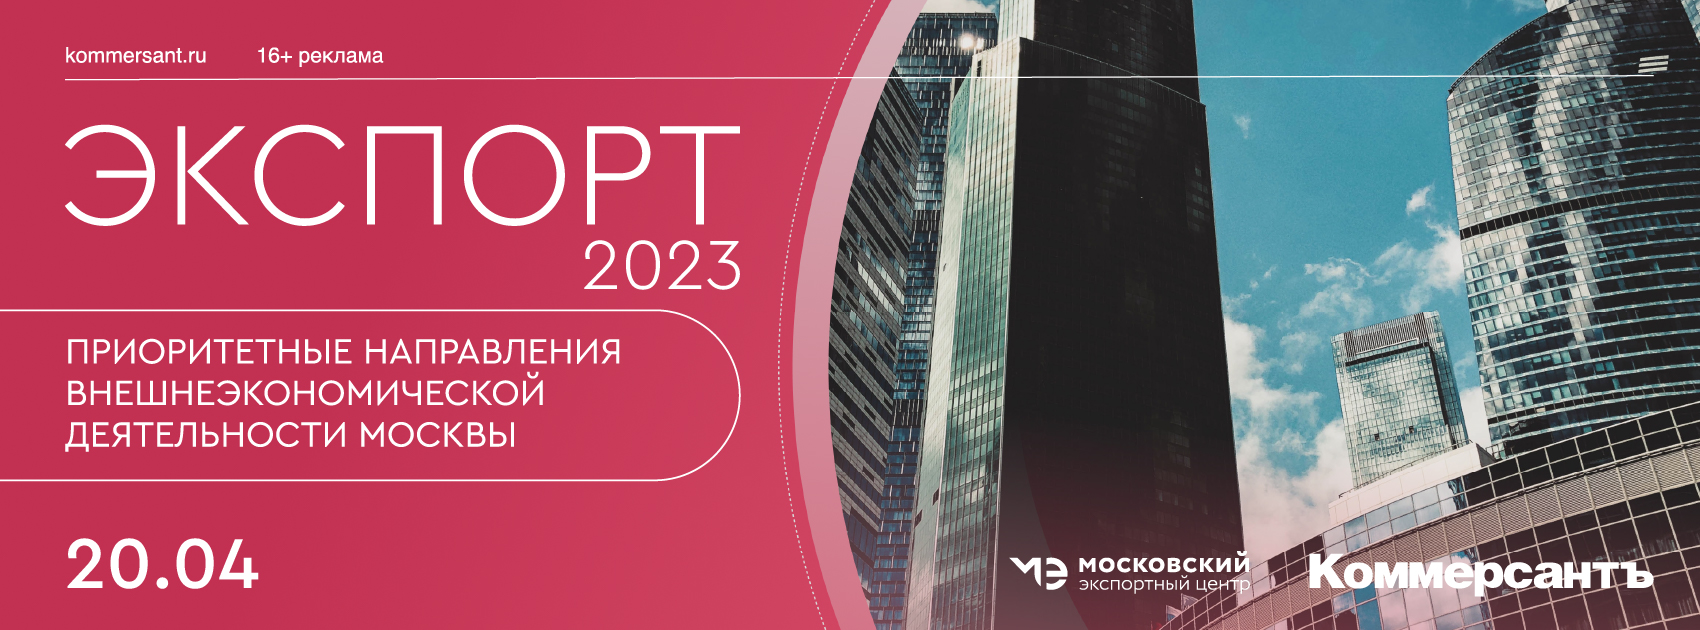 Экспорт-2023: приоритетные направления внешнеэкономической деятельности Москвы